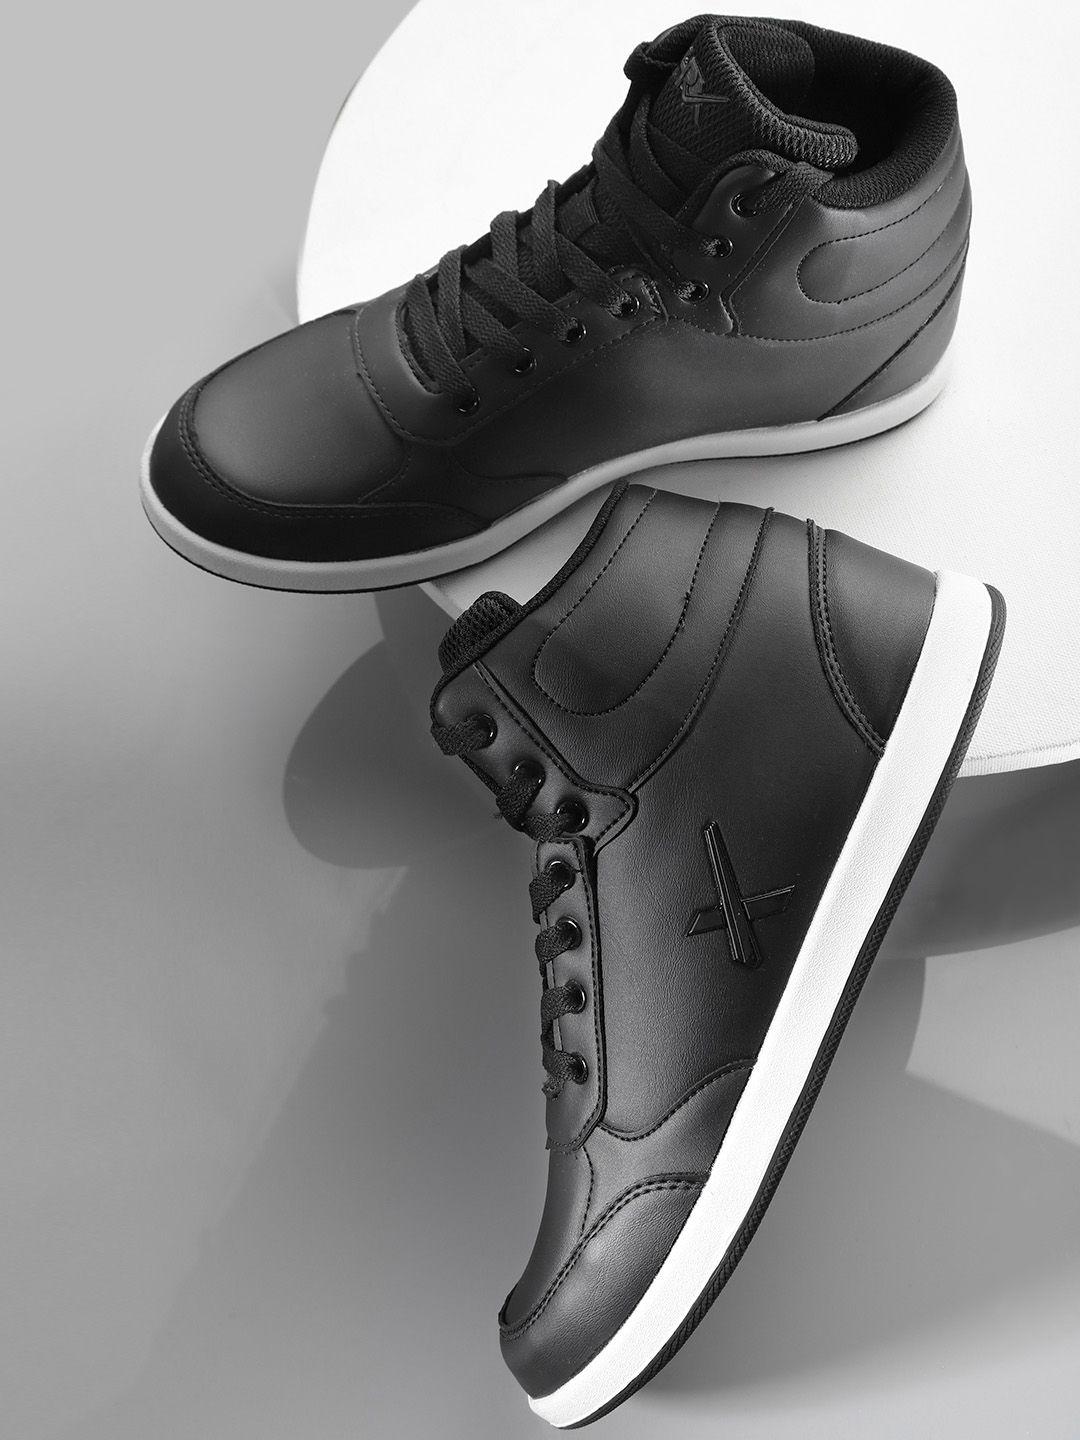 hrx by hrithik roshan black solid mid-top skate street sneakers